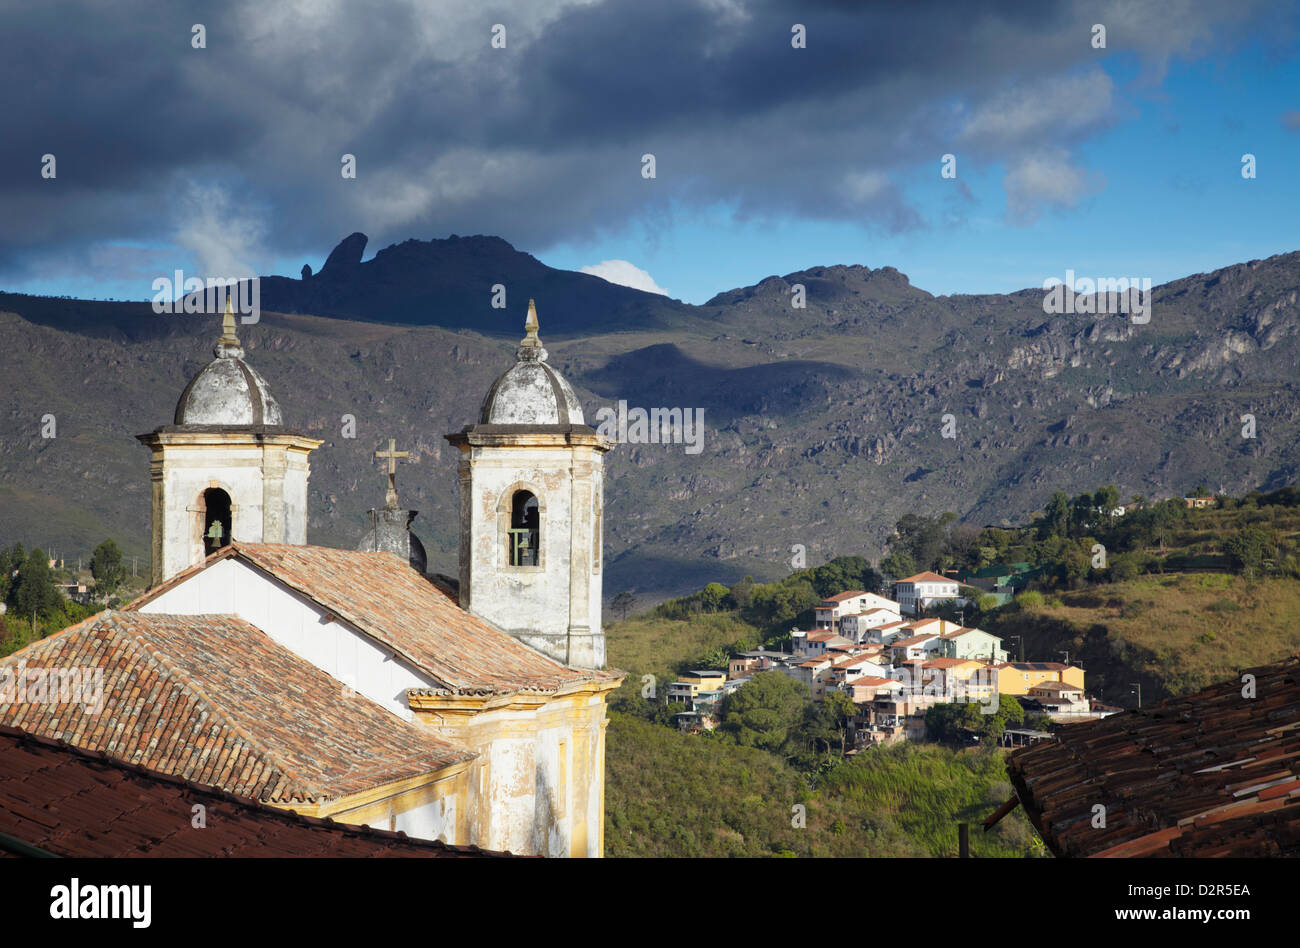 La vista de Nuestra Señora de merces Baixo iglesia, Ouro Preto, Sitio del Patrimonio Mundial de la UNESCO, Minas Gerais, Brasil, América del Sur Foto de stock